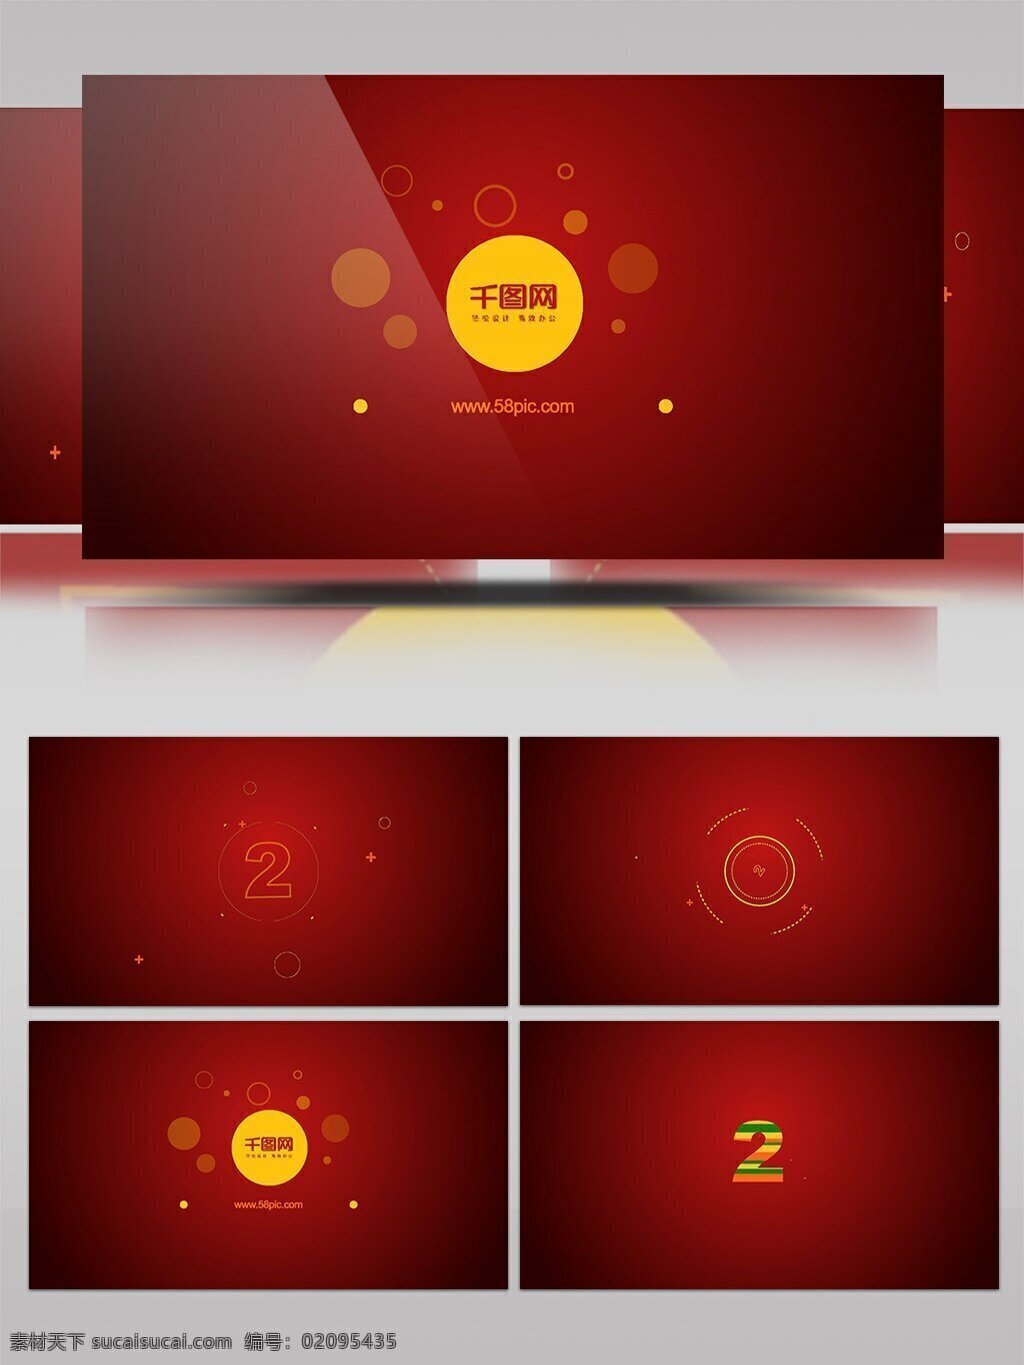 倒计时 图形 标志 展示 ae 模板 红色 几何 创意 logo演绎 新年 mg动画 开场 片头